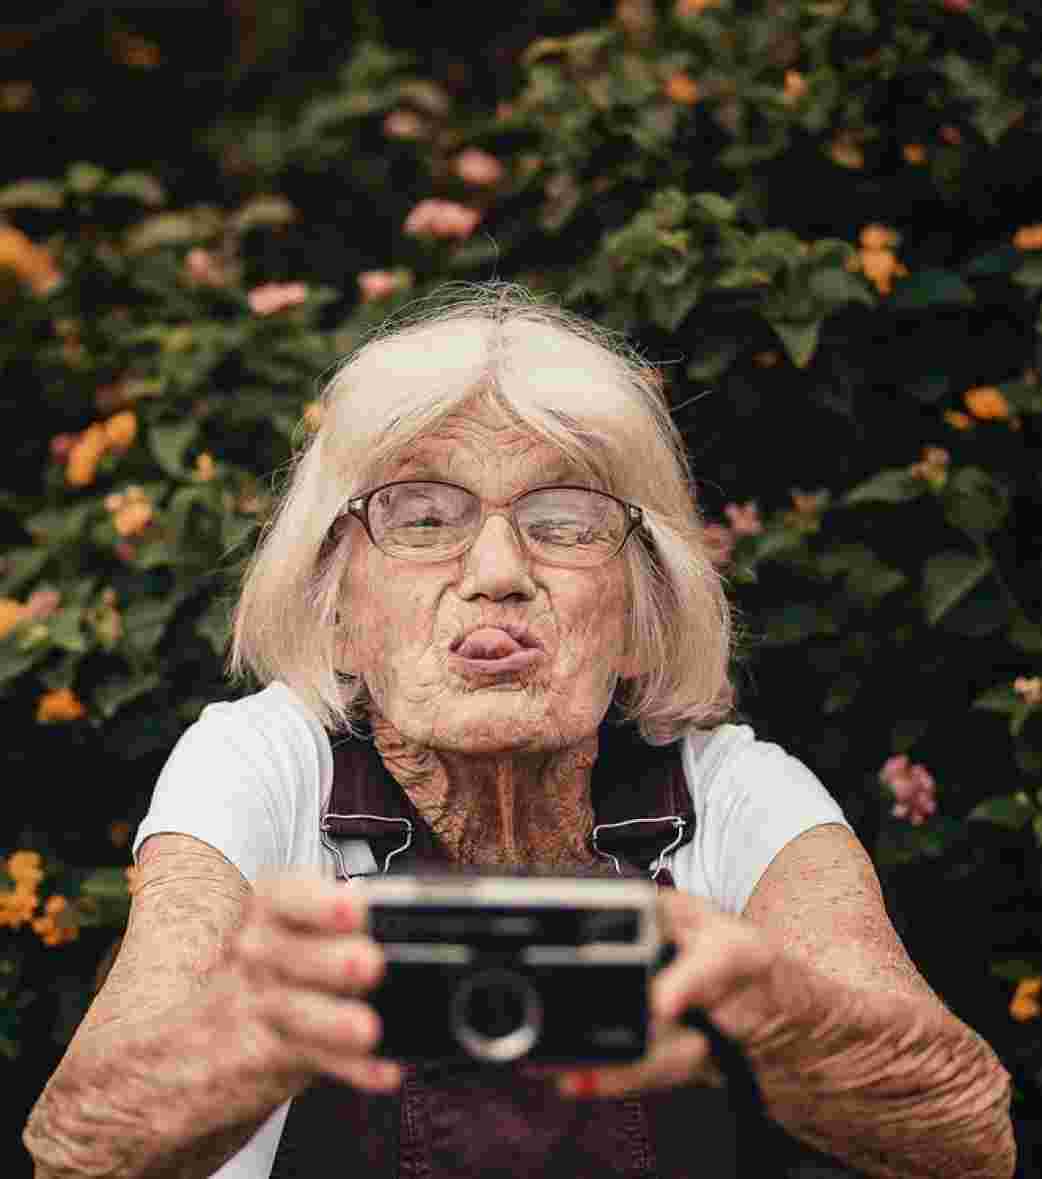 Older lady taking a selfie